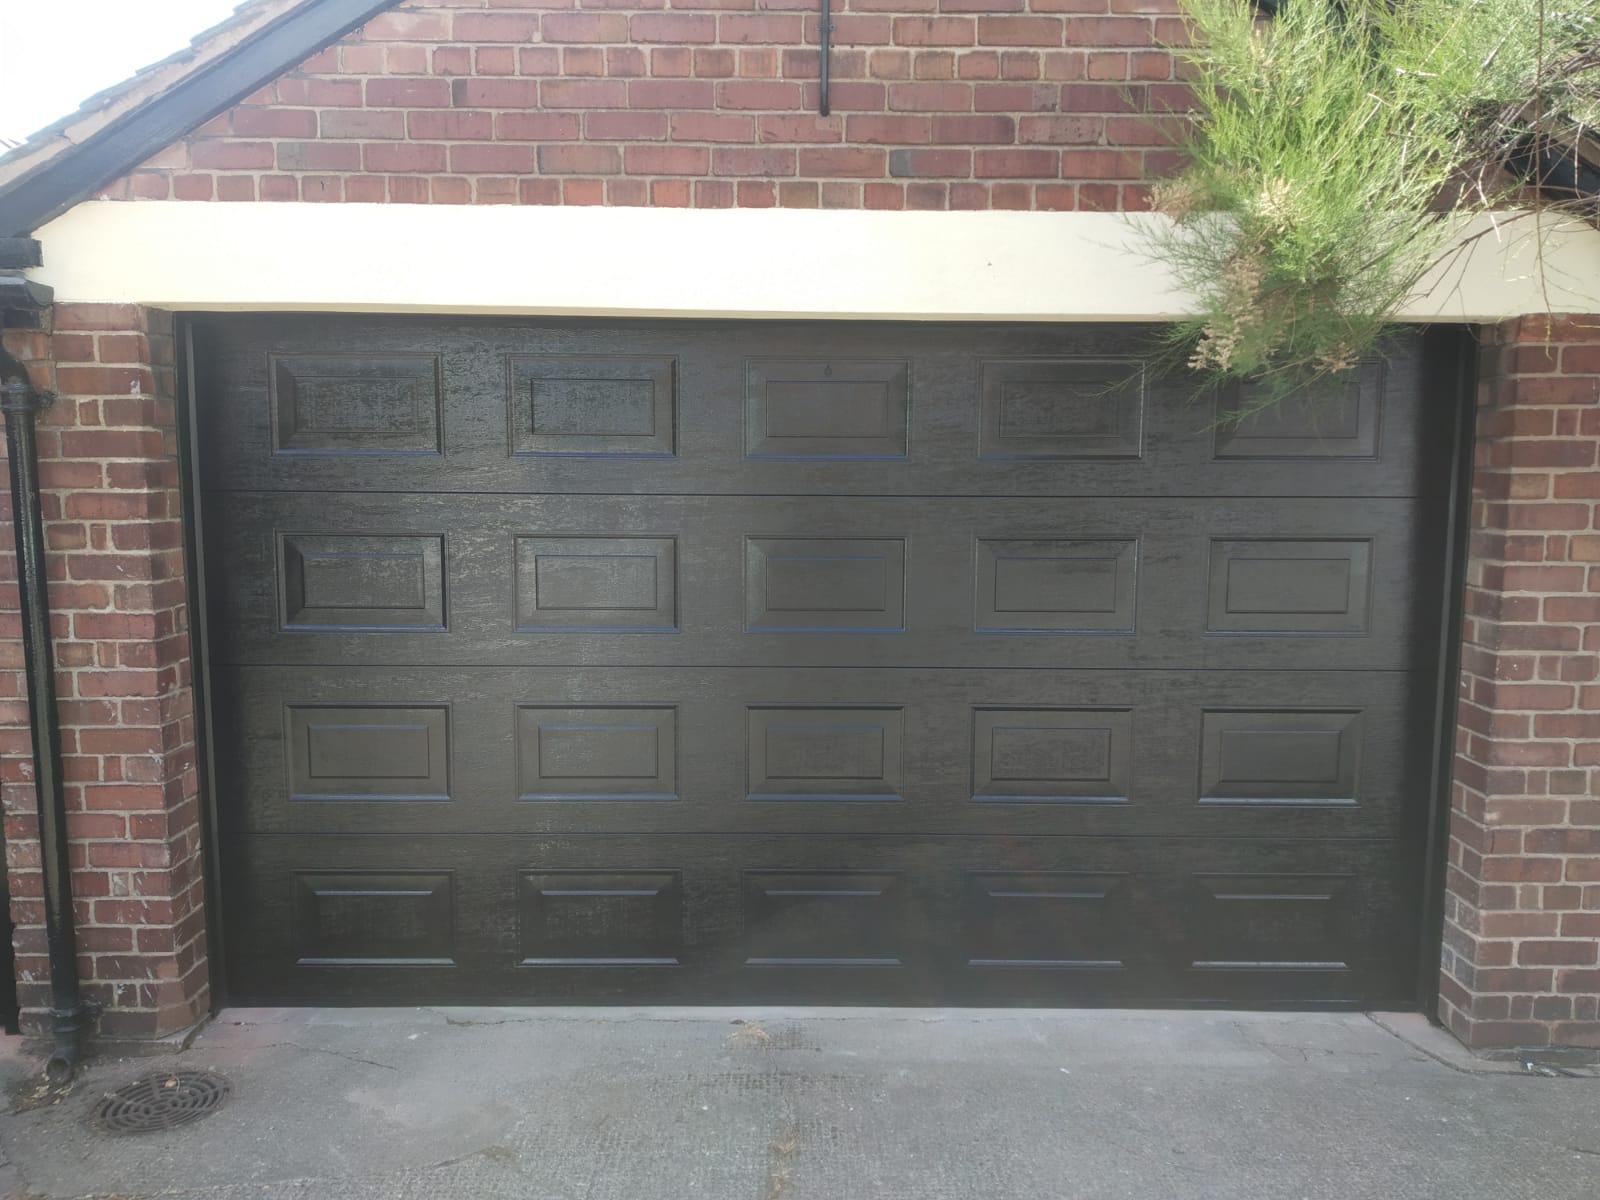 Second Insulated garage door in black